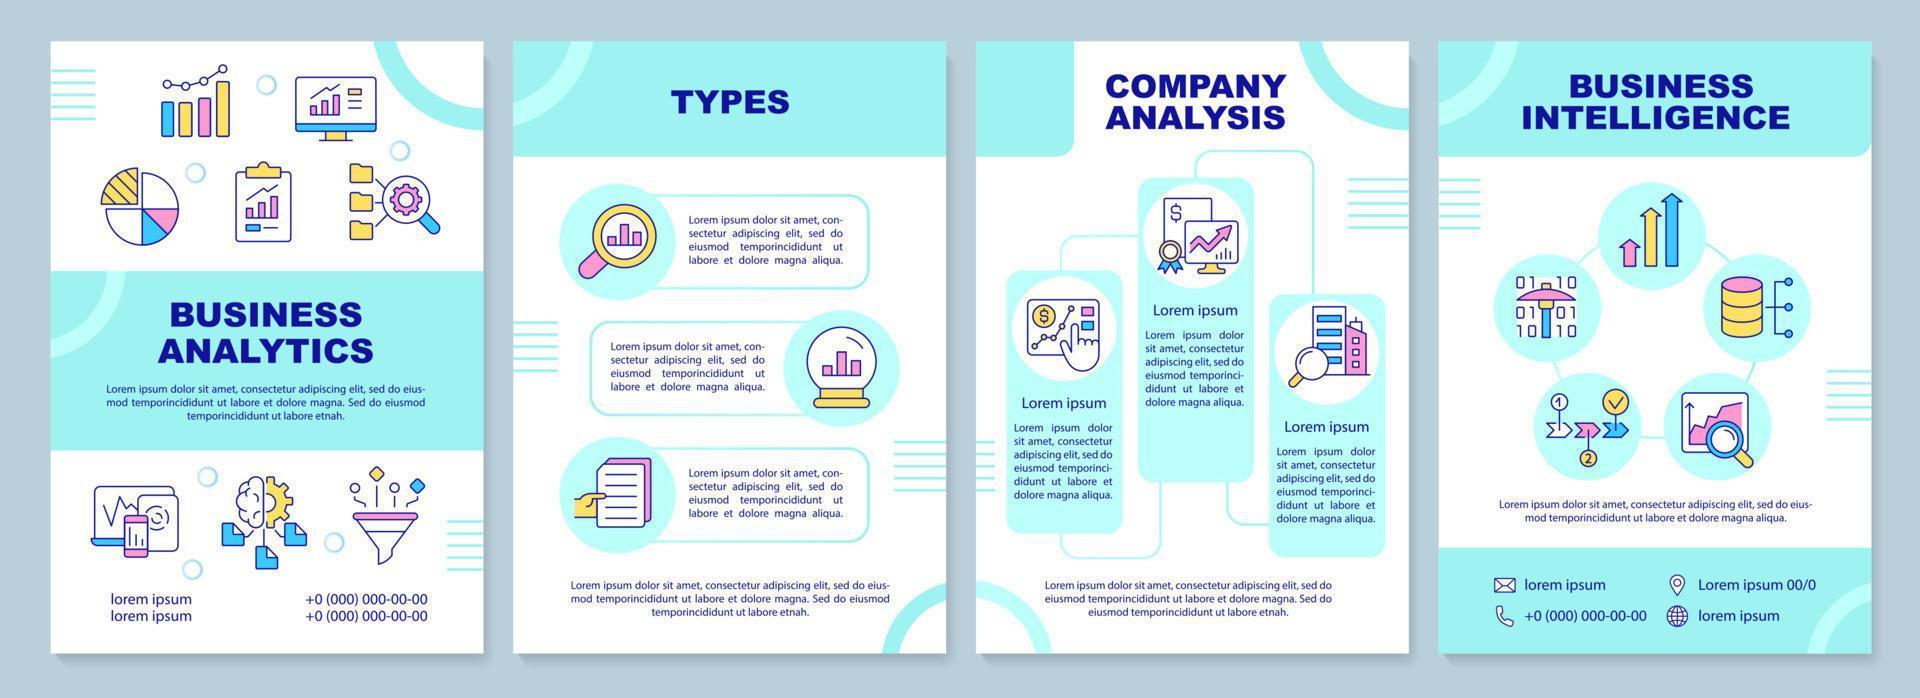 företag data analys turkos broschyr mall. företag förvaltning. folder design med linjär ikoner. 4 vektor layouter för presentation, årlig rapporterar.